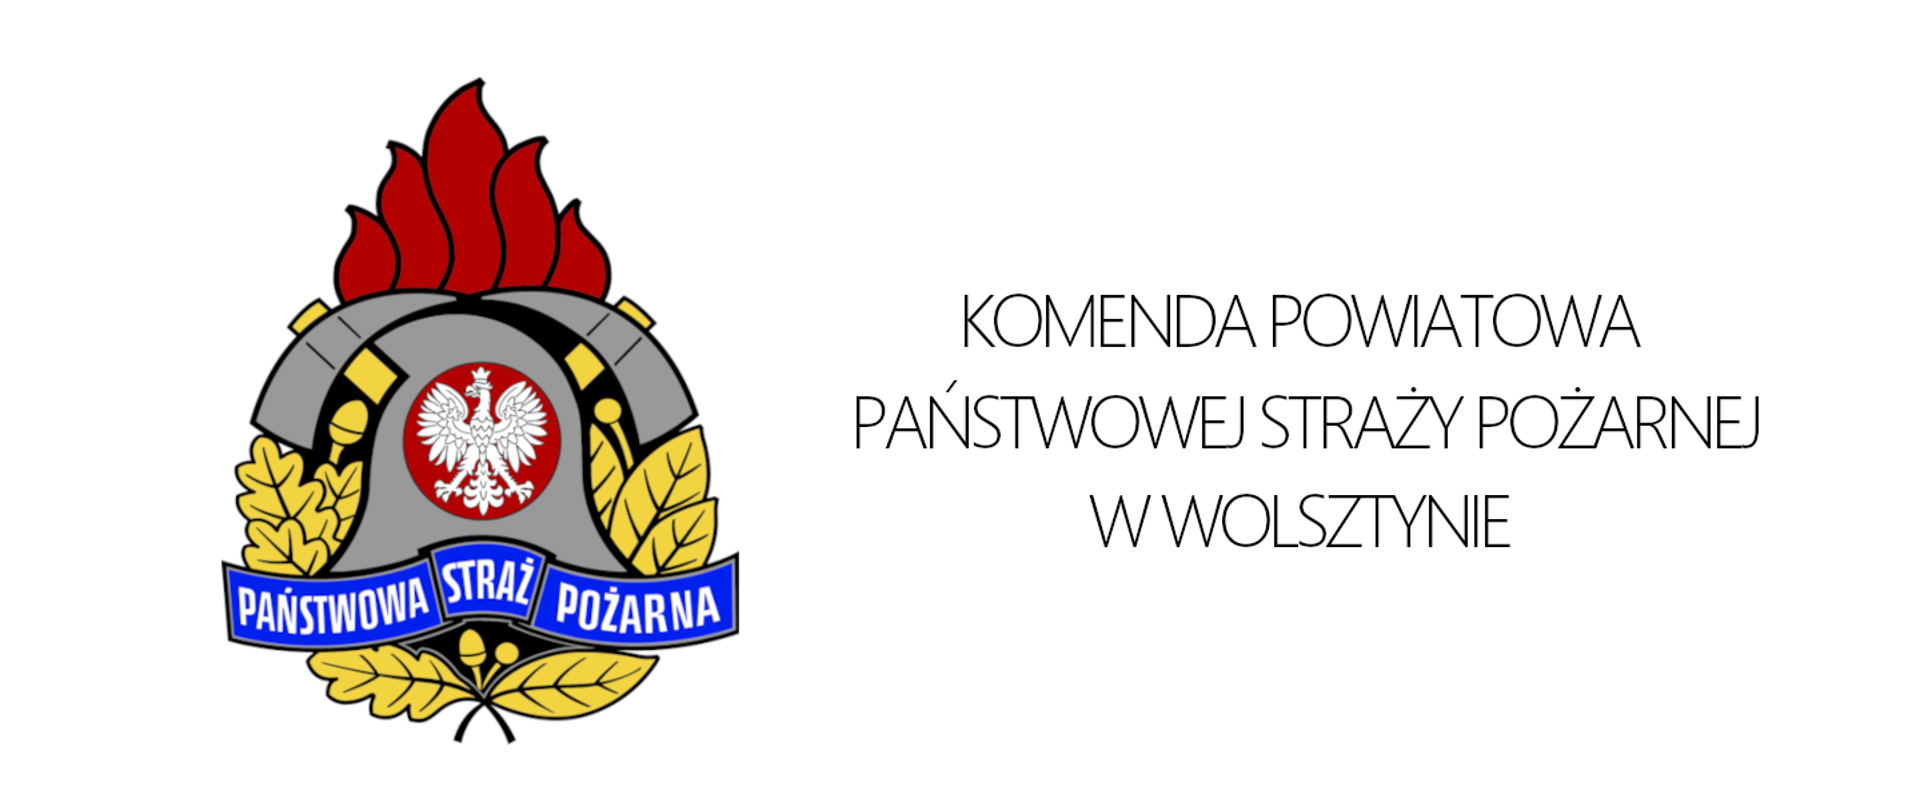 Logo PSP. Po prawej napis Komenda Powiatowa PSP w Wolsztynie.